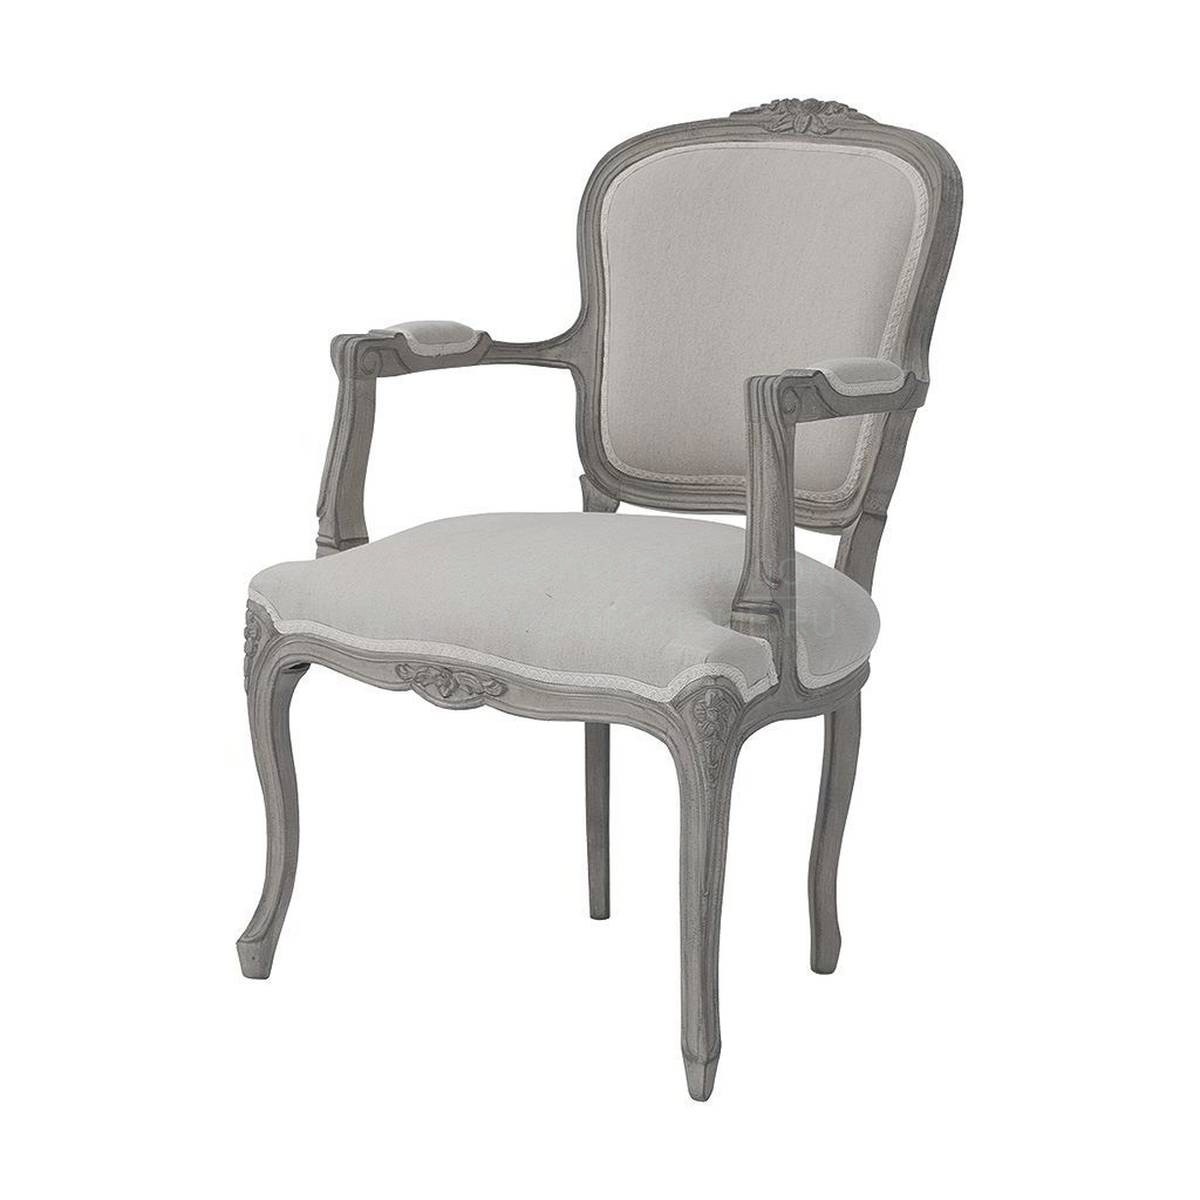 Кресло M-3368 armchair из Испании фабрики GUADARTE